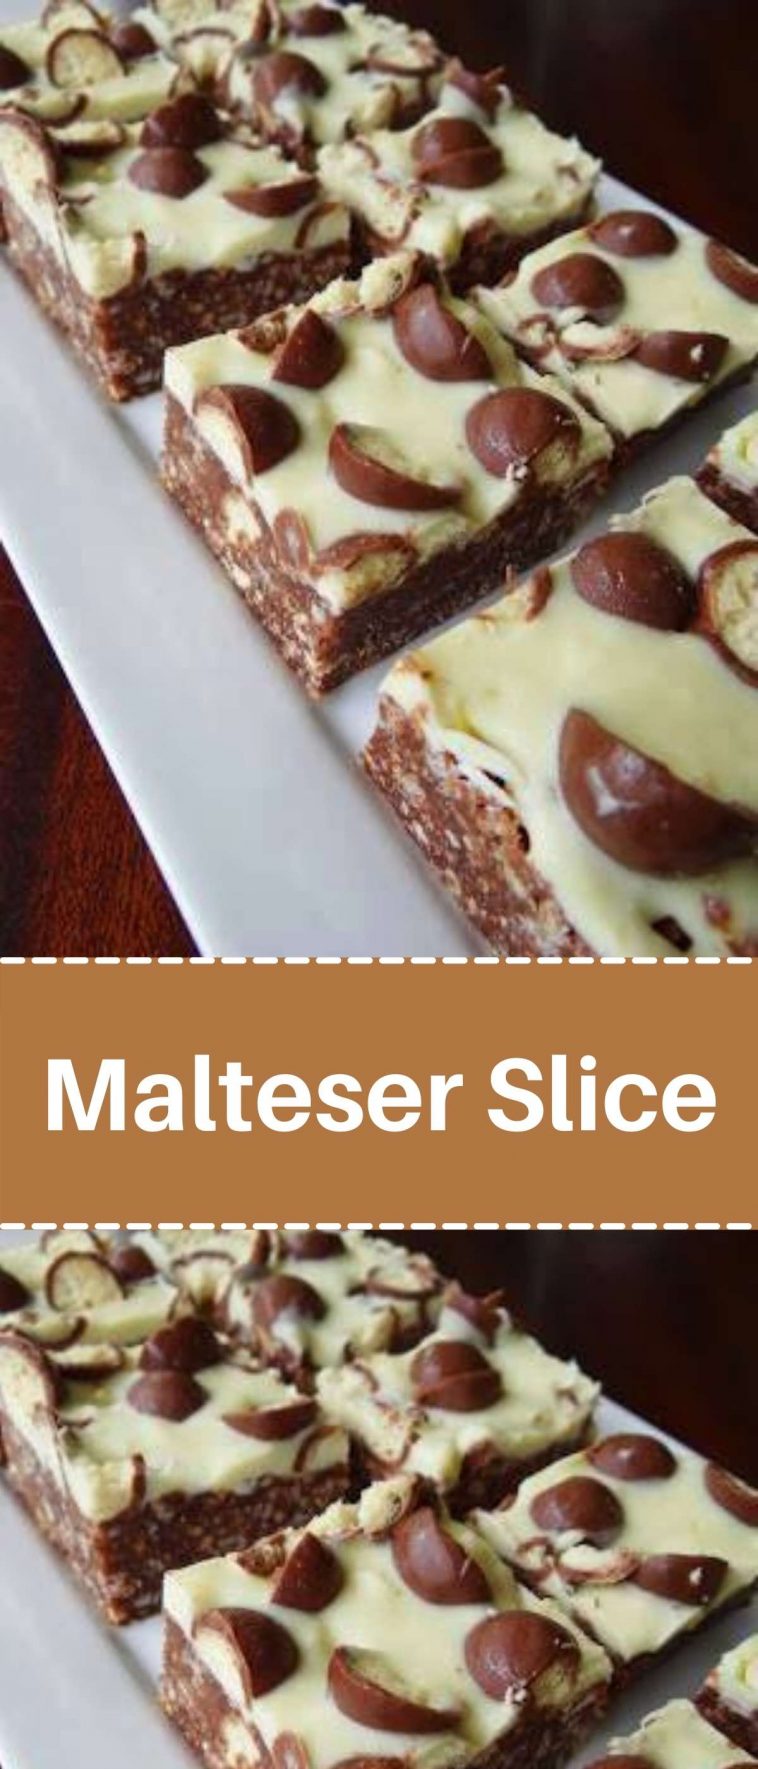 Malteser Slice